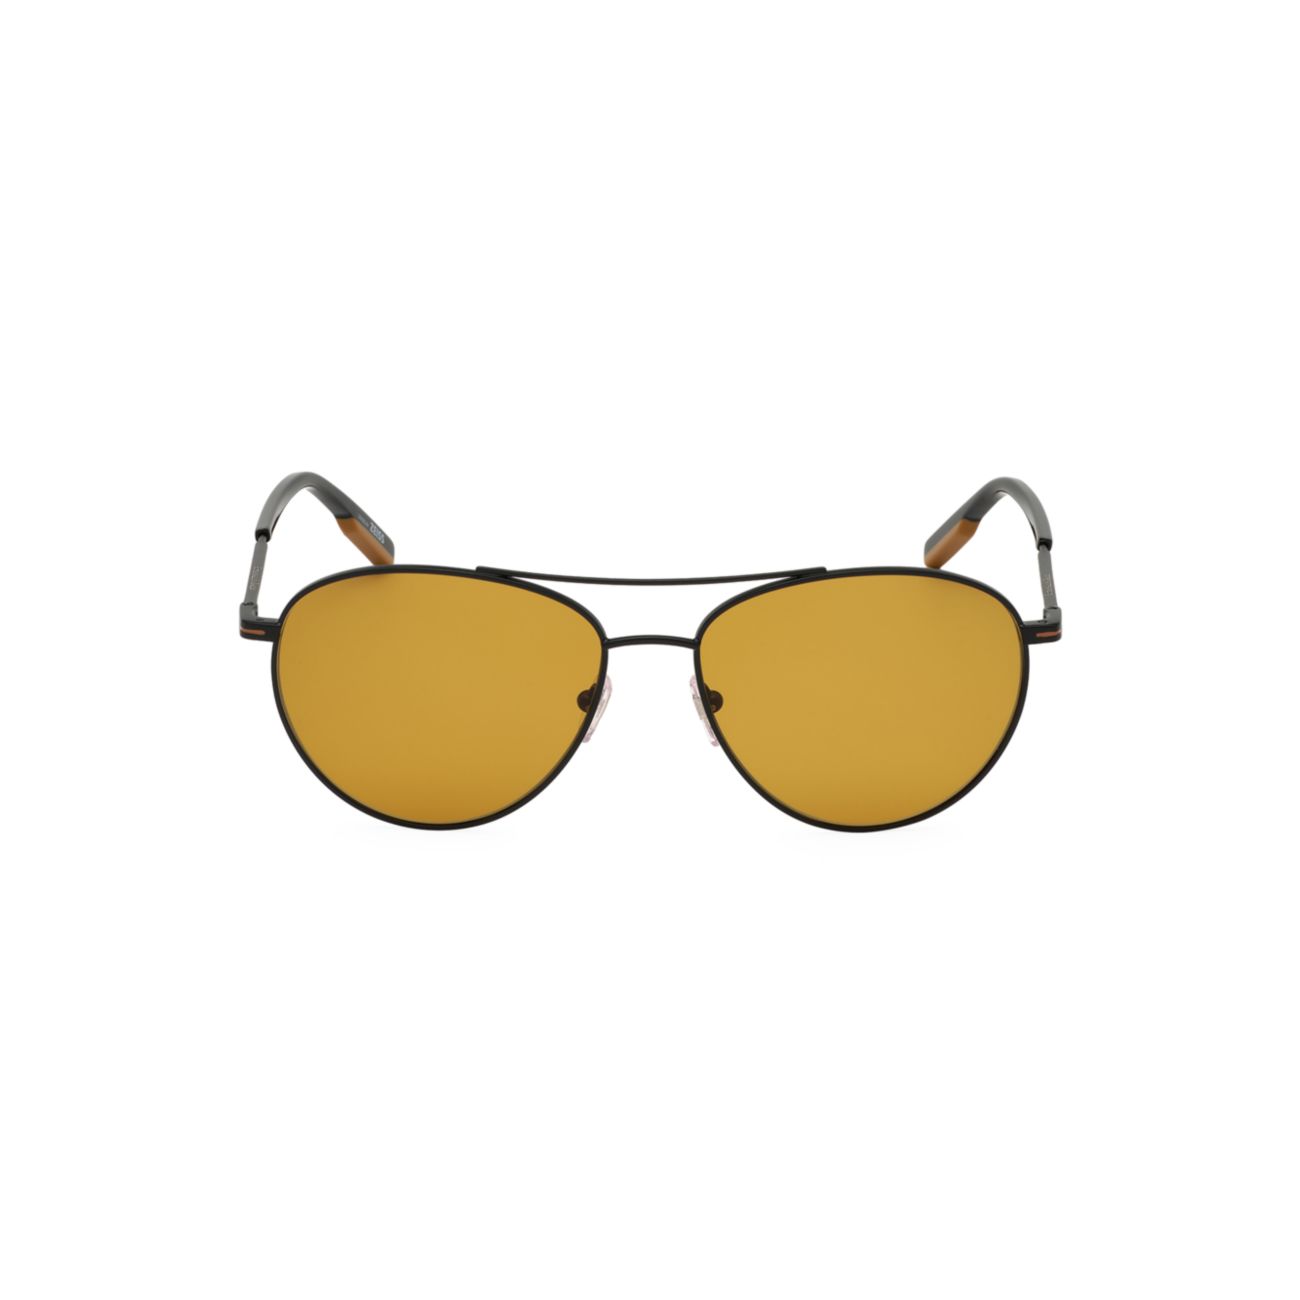 Круглые солнцезащитные очки-авиаторы из поляризованного металла 58 мм Zegna